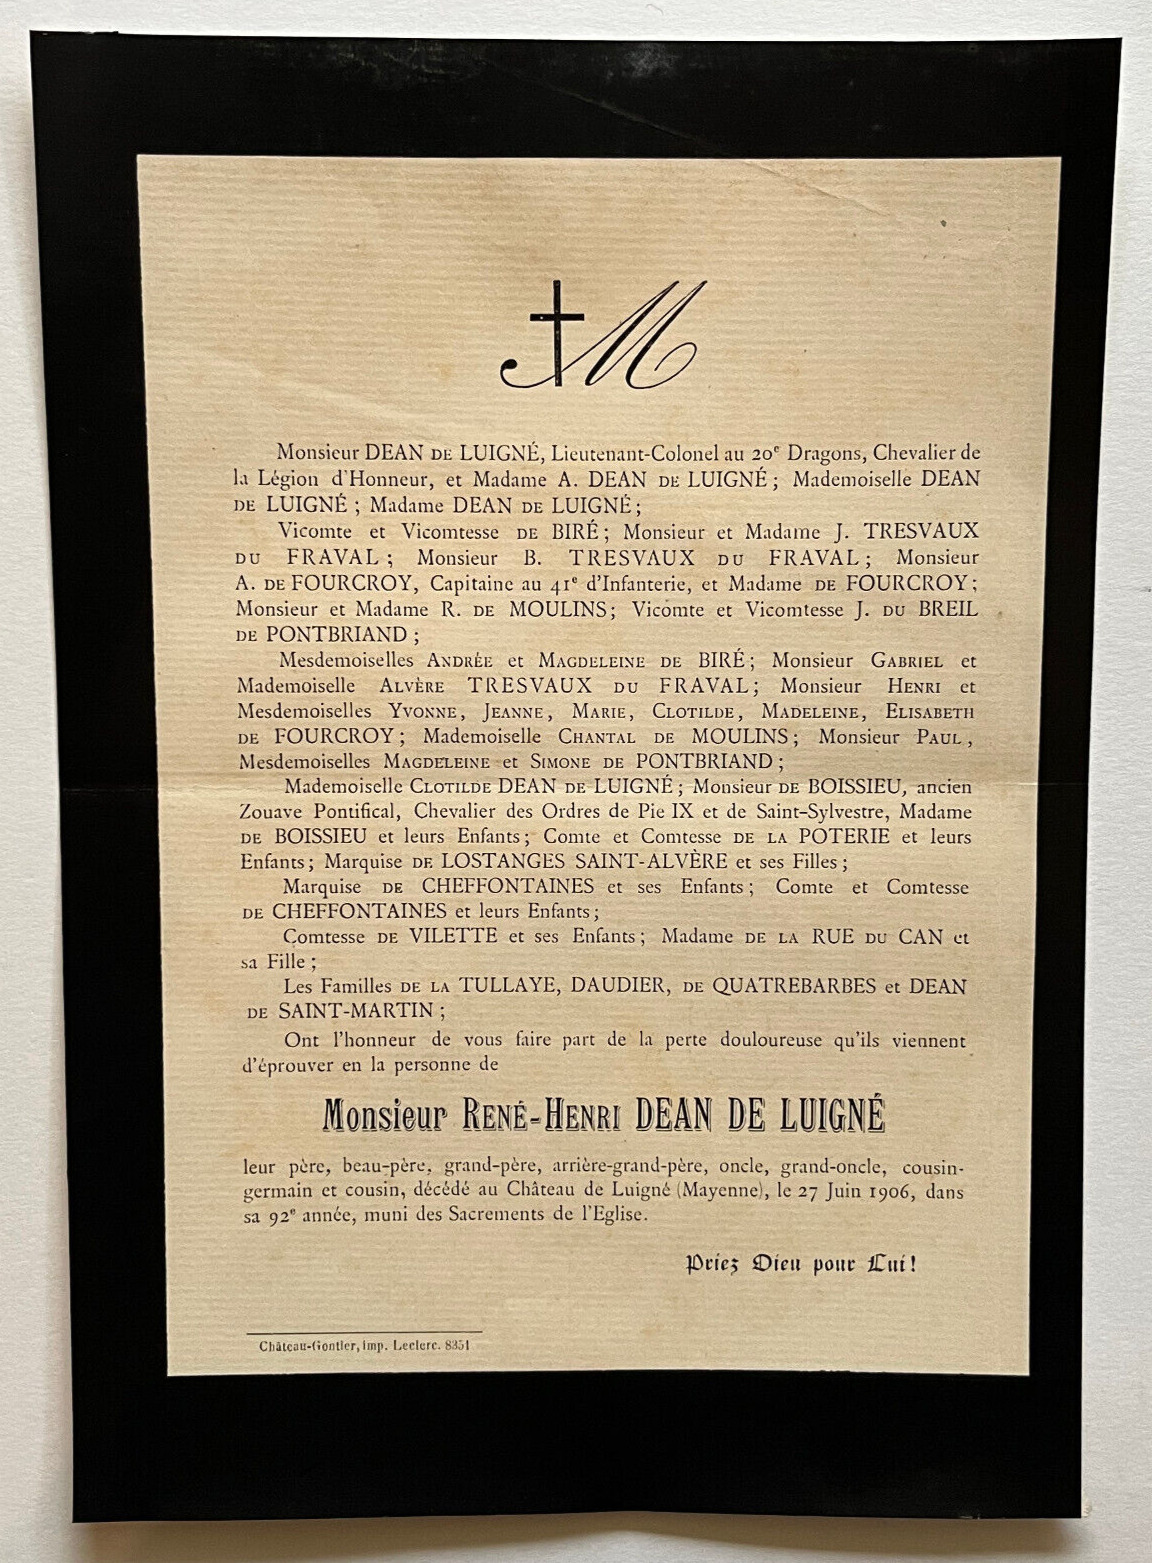 DEAN DE LUIGNE Tresvaux Fraval SHARE Pontbriand FOURCROY 1906